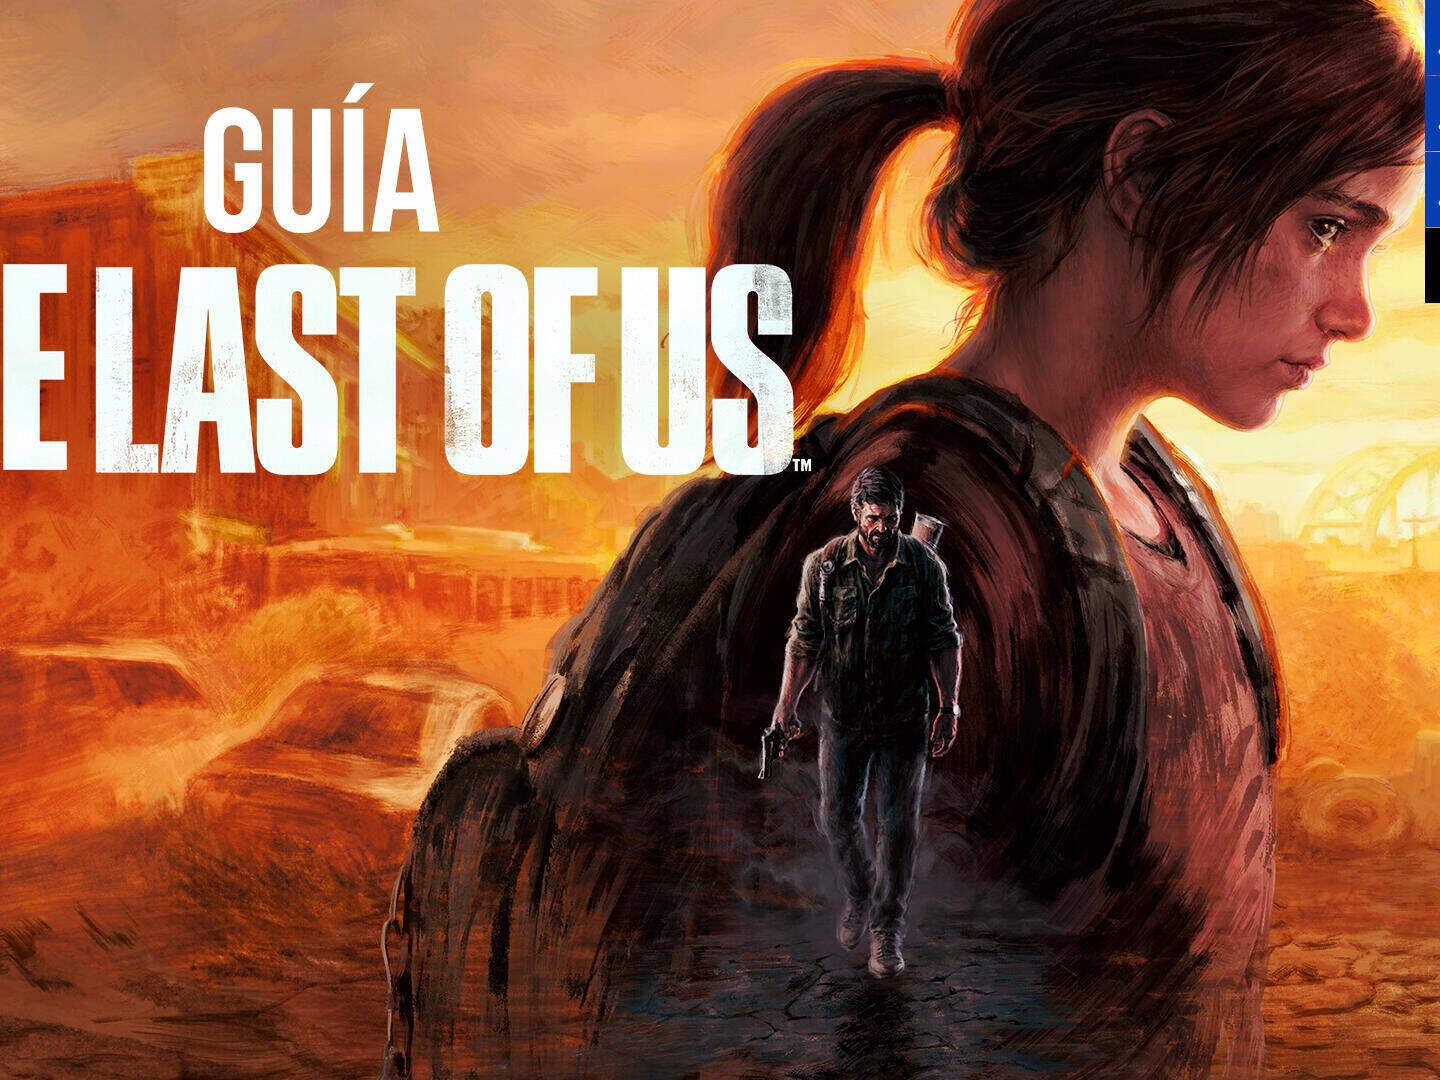 Por que The Last of Us faz tanto sucesso? – GuiaPlay